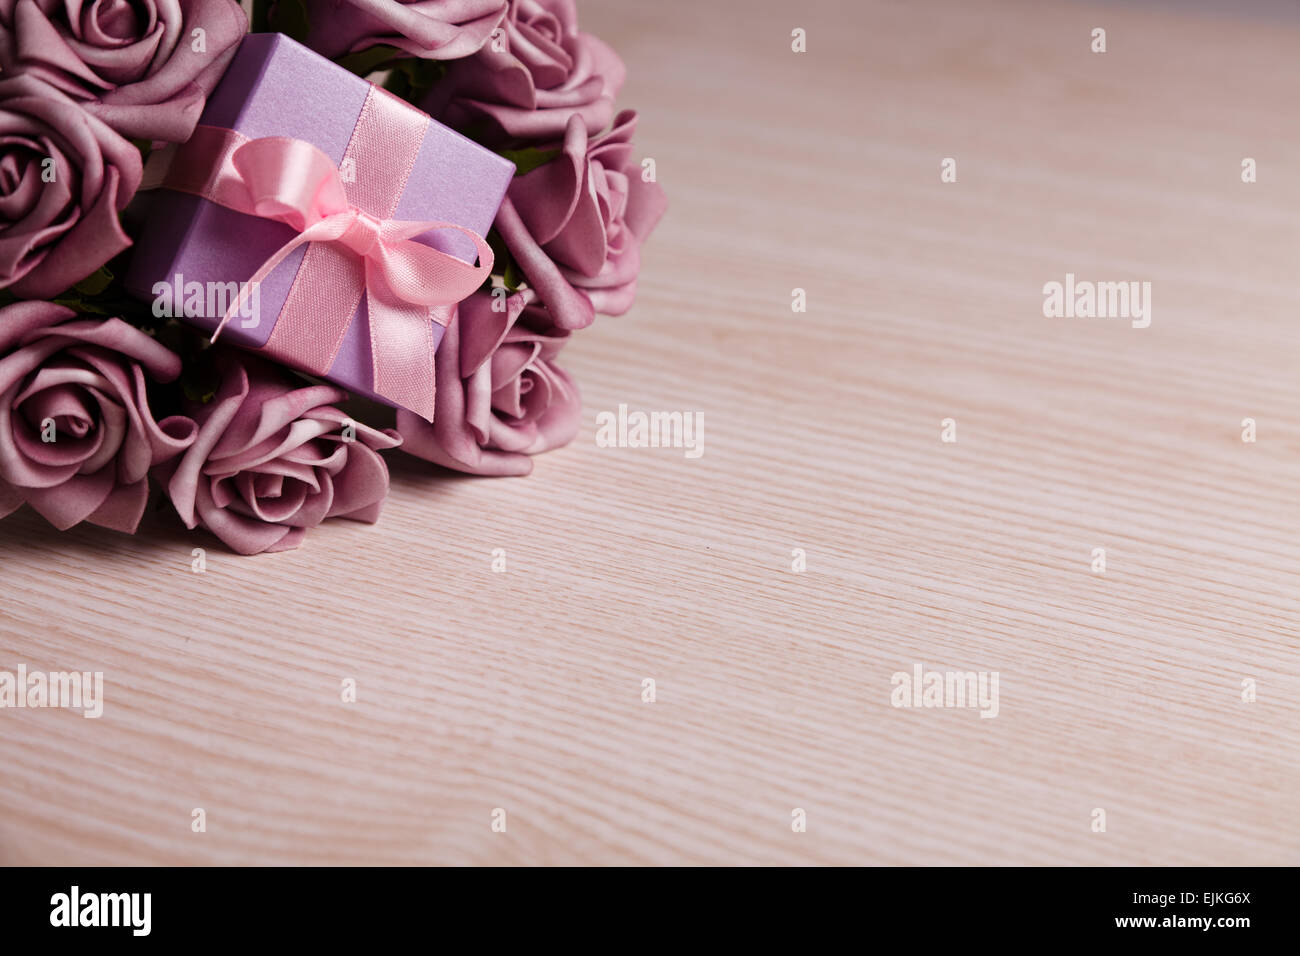 Viola rose e confezione regalo Foto Stock